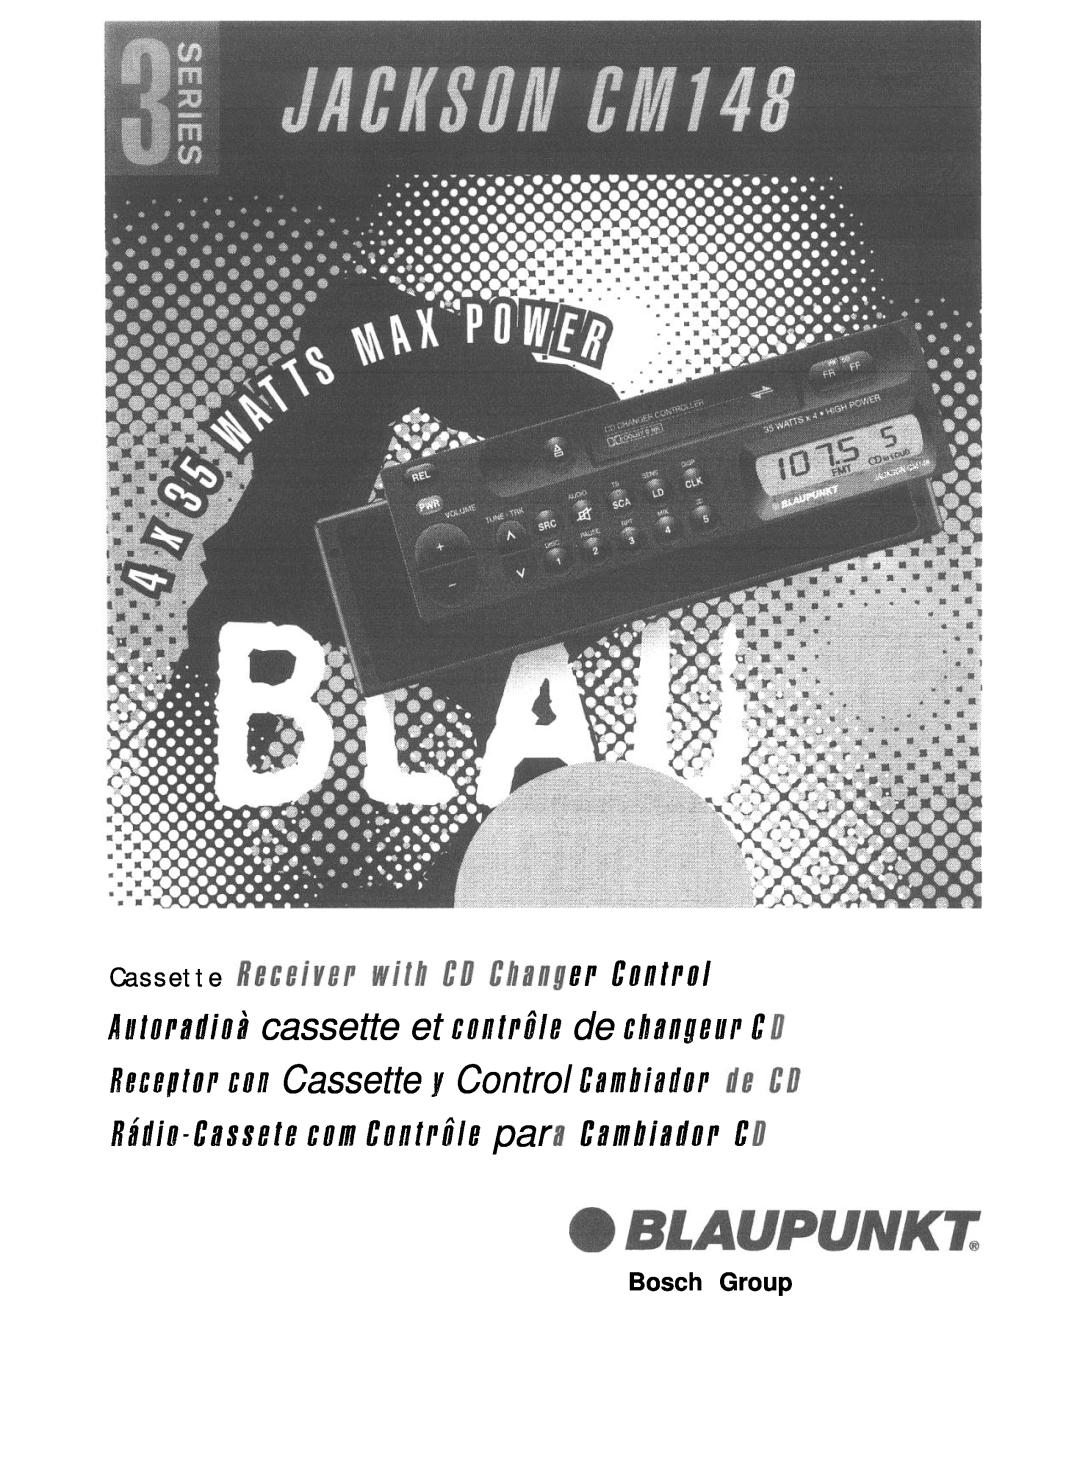 Blaupunkt CR67 manual Cassette t!P Control, Bosch Group 